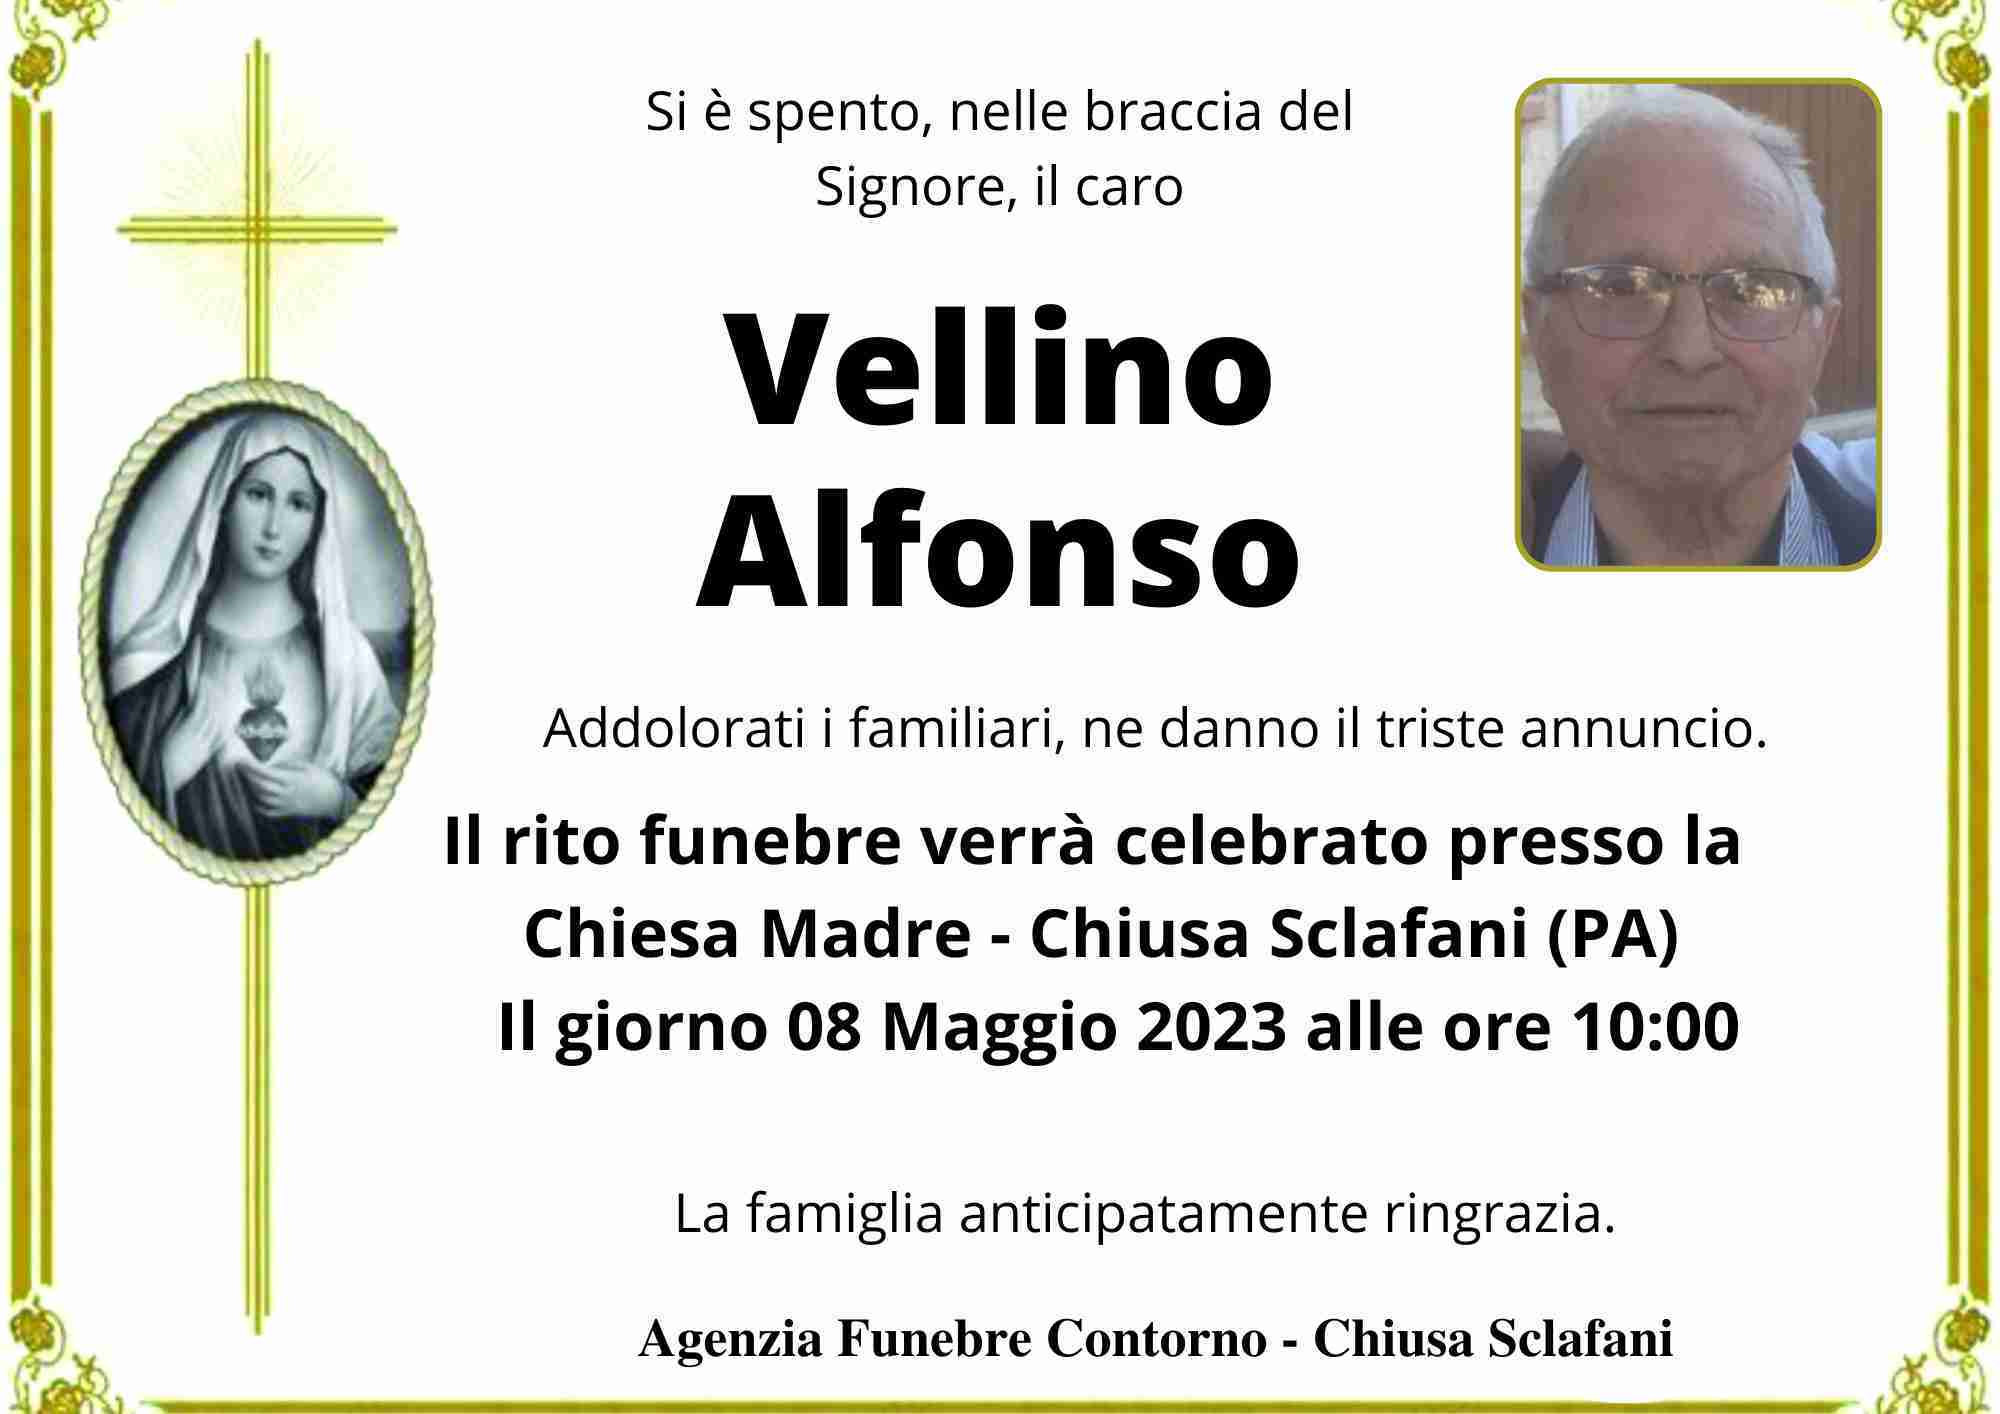 Alfonso Vellino